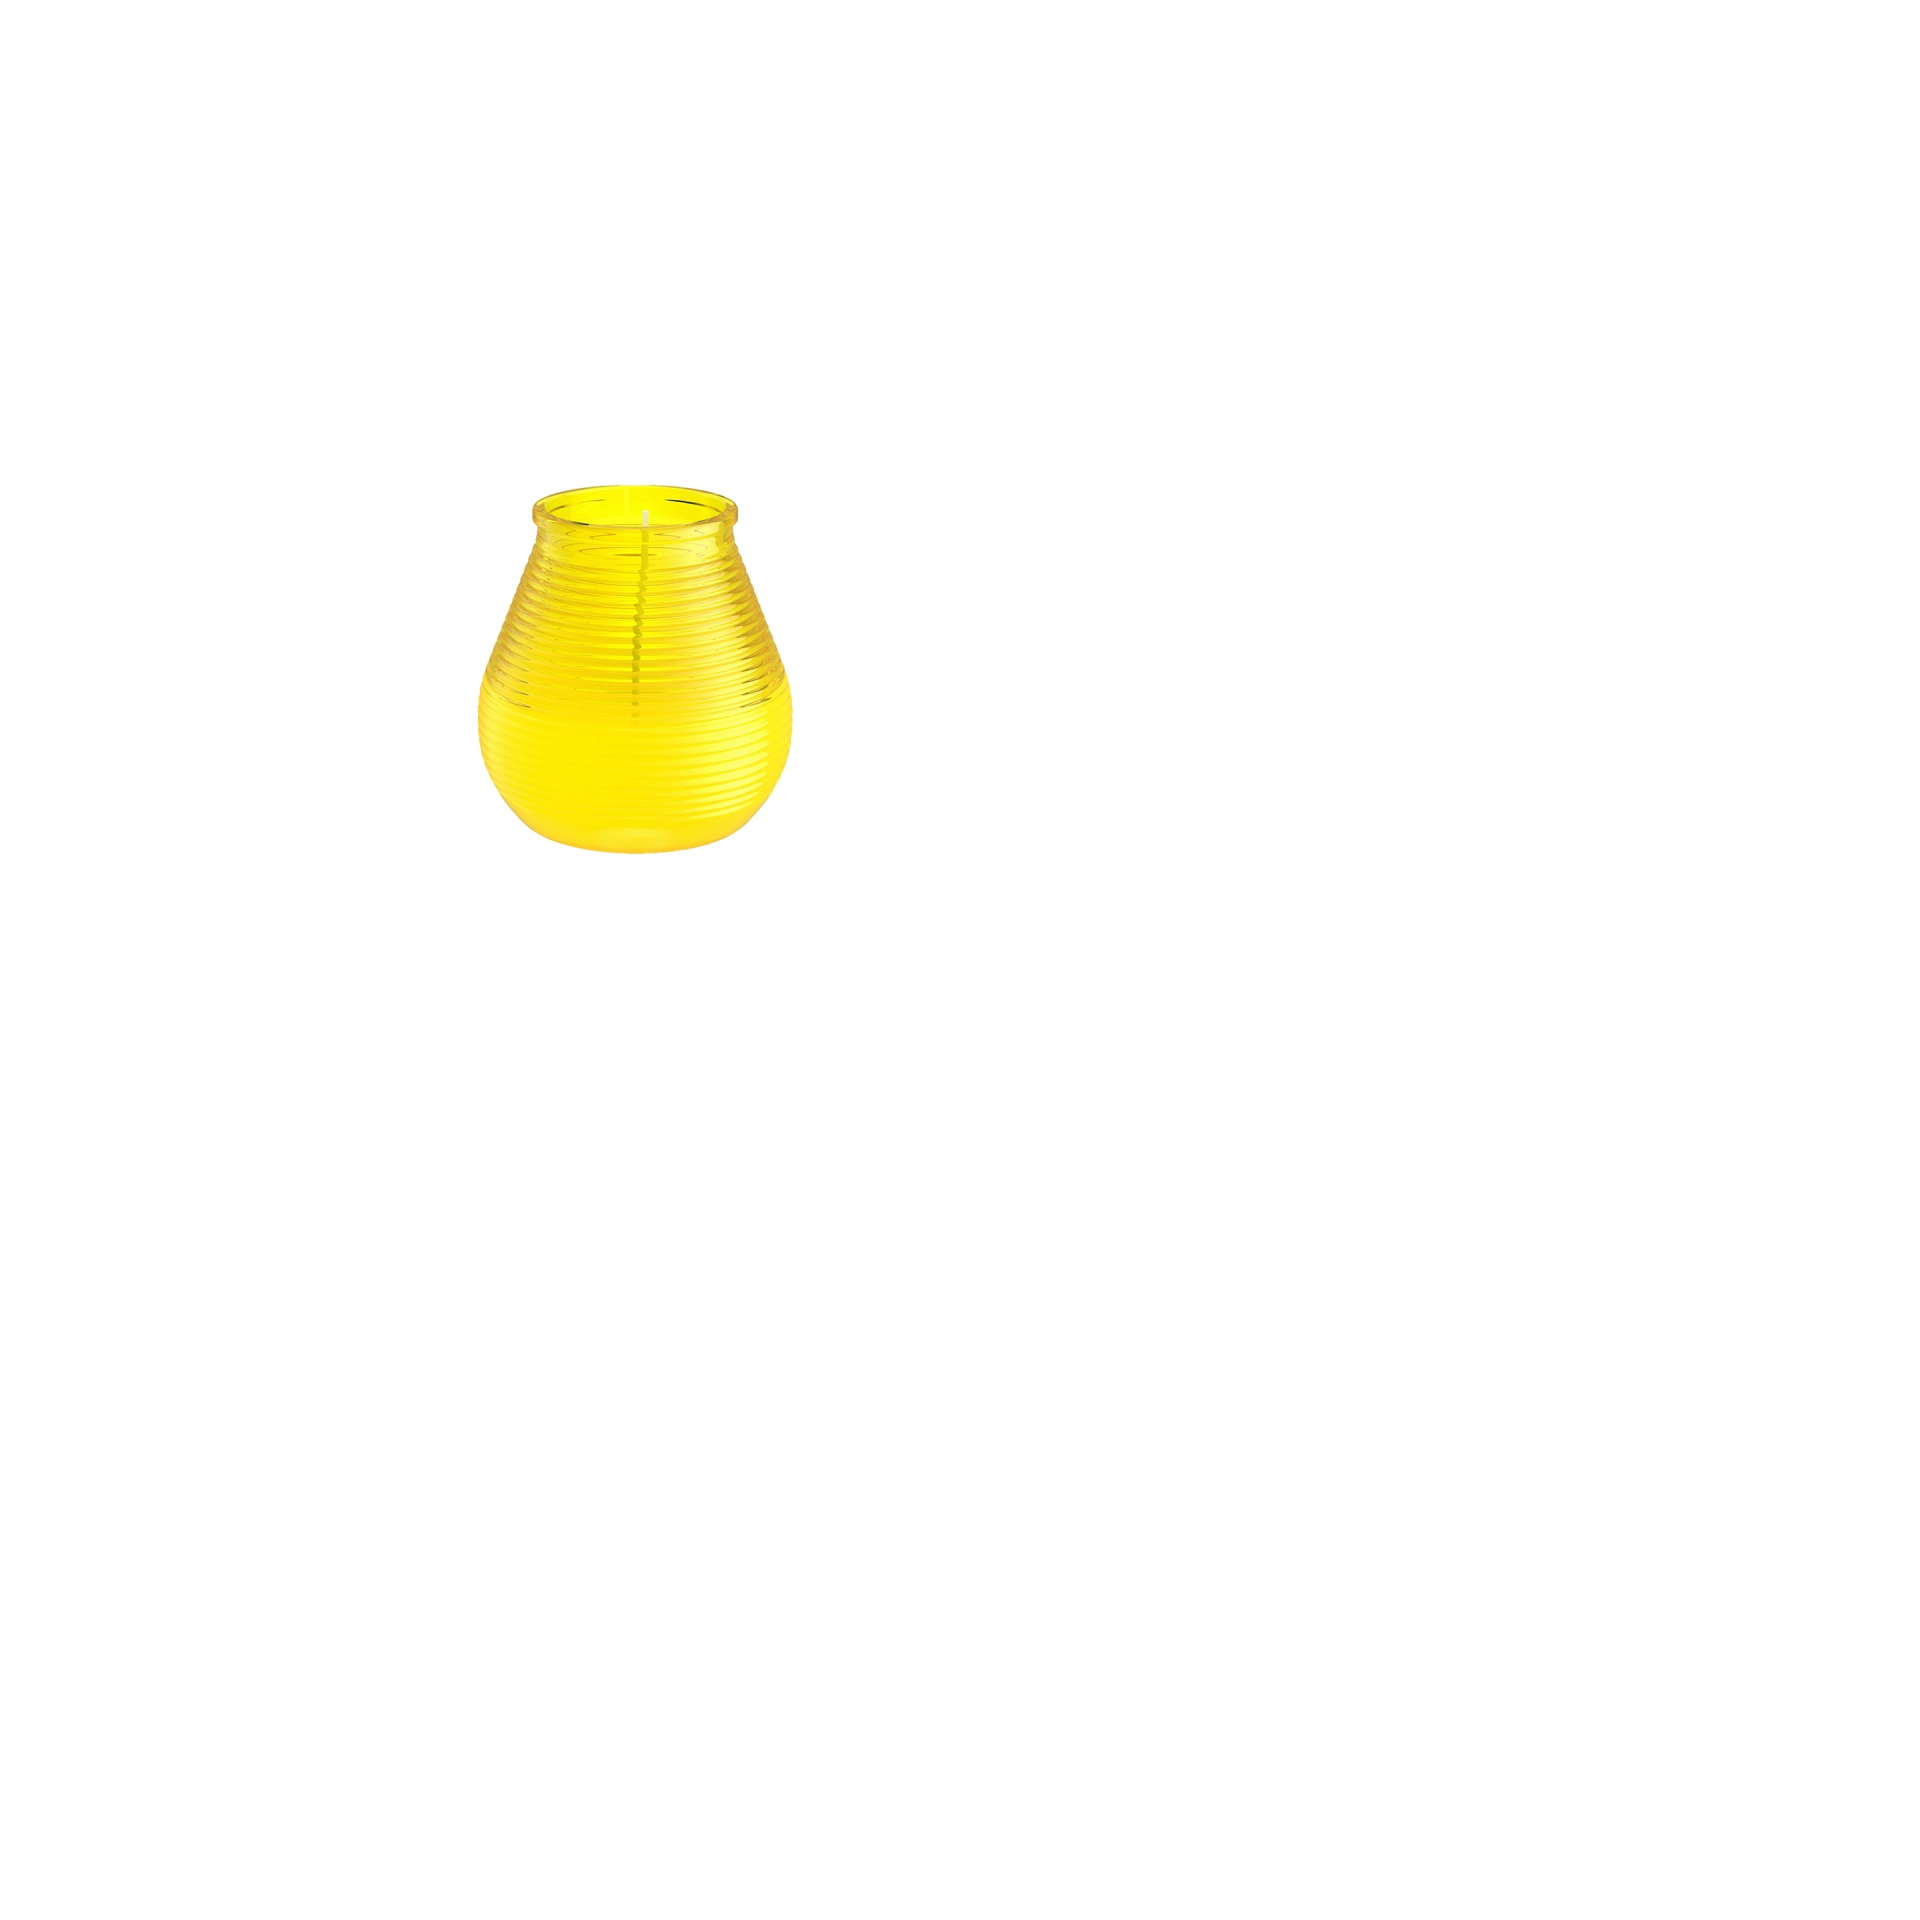 Gartenfeuer Olympic in Glas h 9,4 cm | Ø 9,1 cm gelb